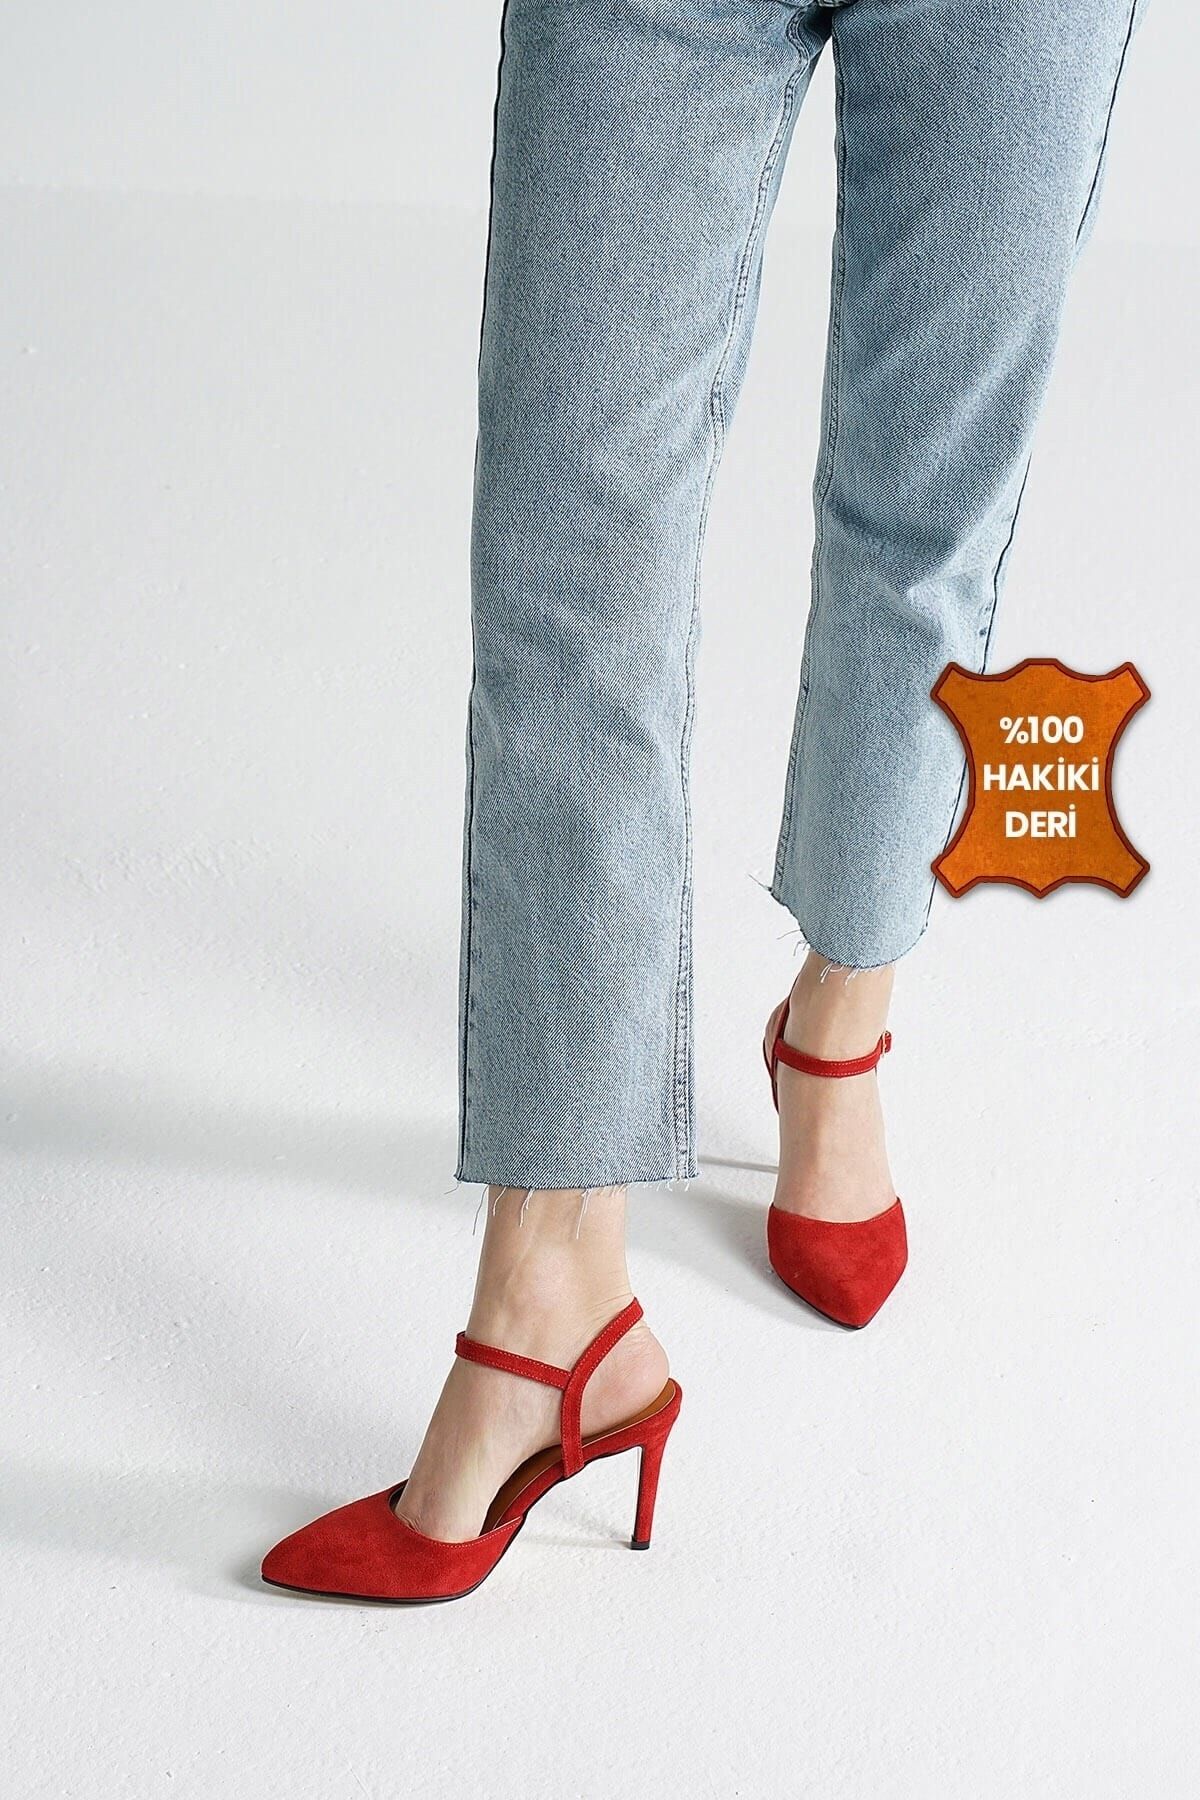 Mio Gusto Lucia Hakiki Süet Kırmızı Renk Kadın Topuklu Ayakkabı